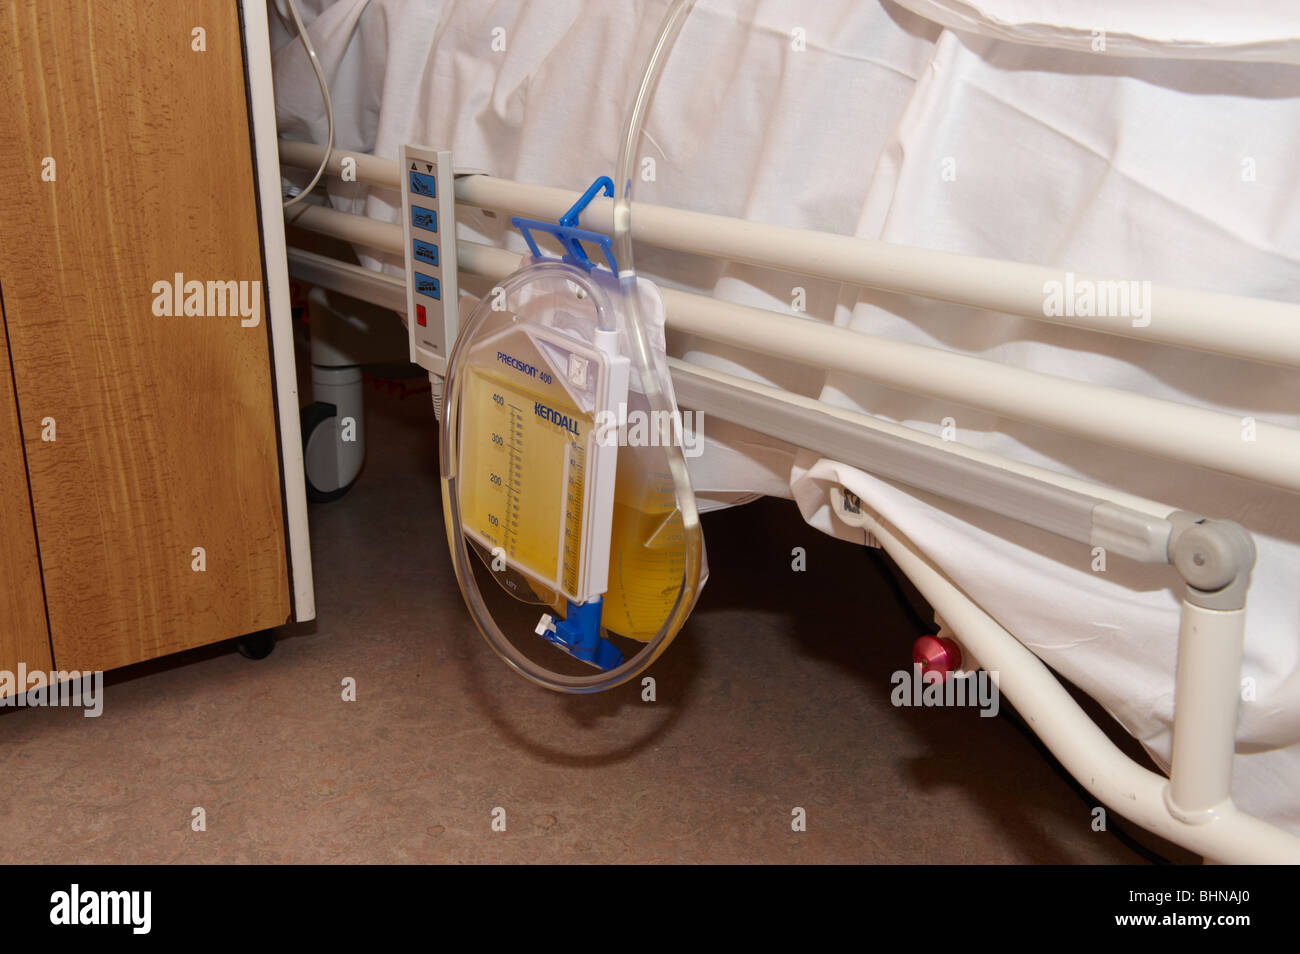 Krankenhaus Katheter Urinbeutel auf Seite des Bett geschnallt  Stockfotografie - Alamy